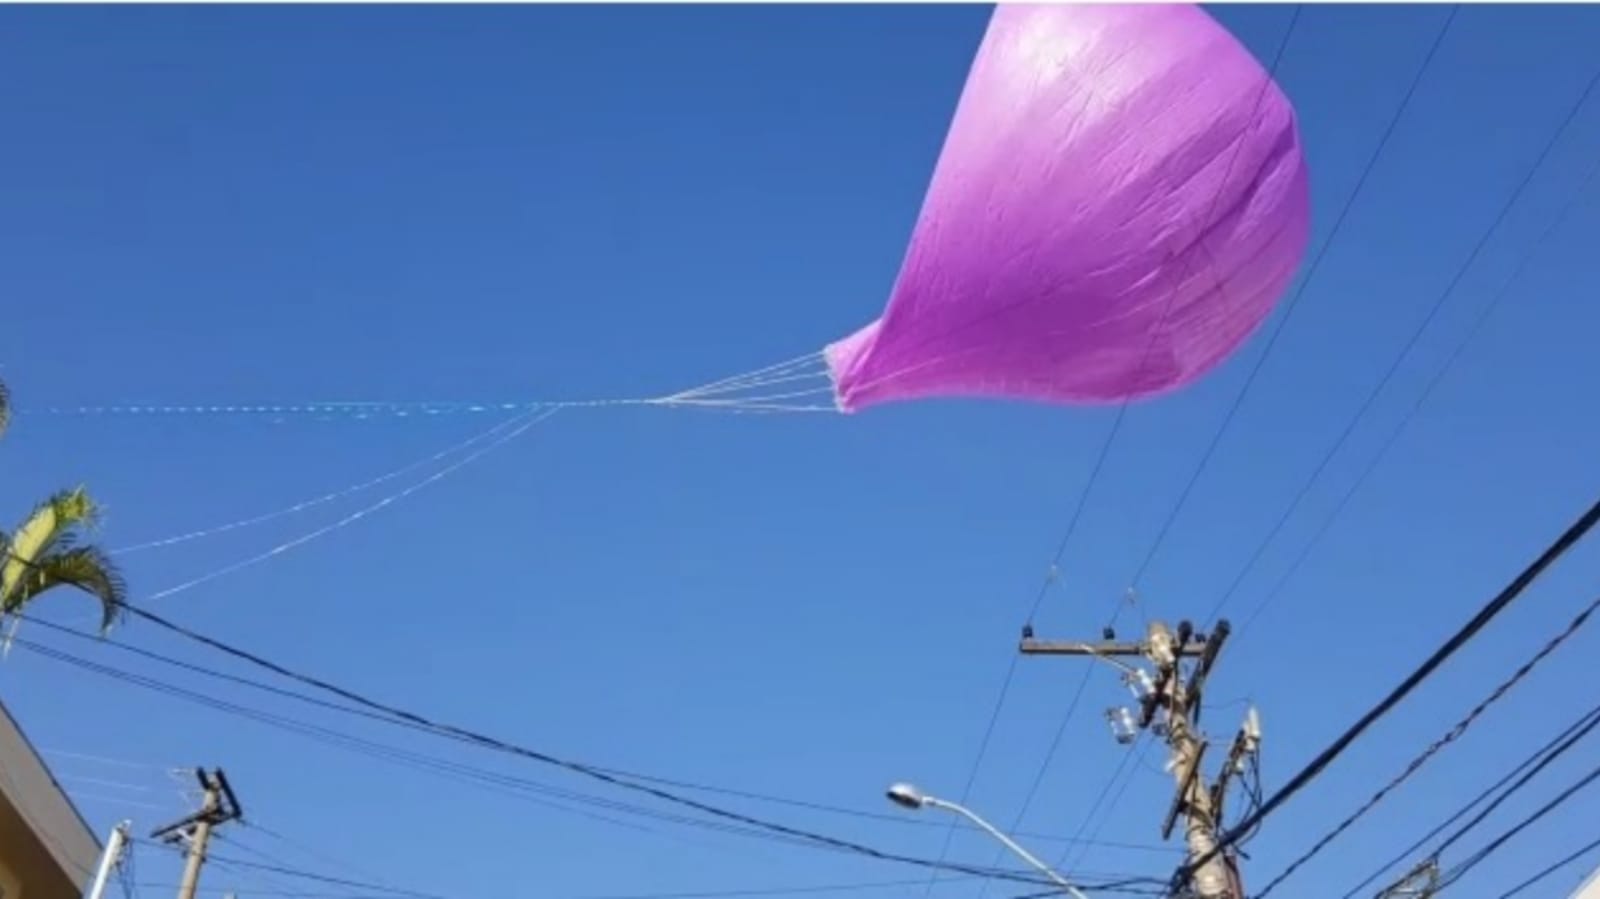 Balão roxo caindo próximo de fios de alta tensão